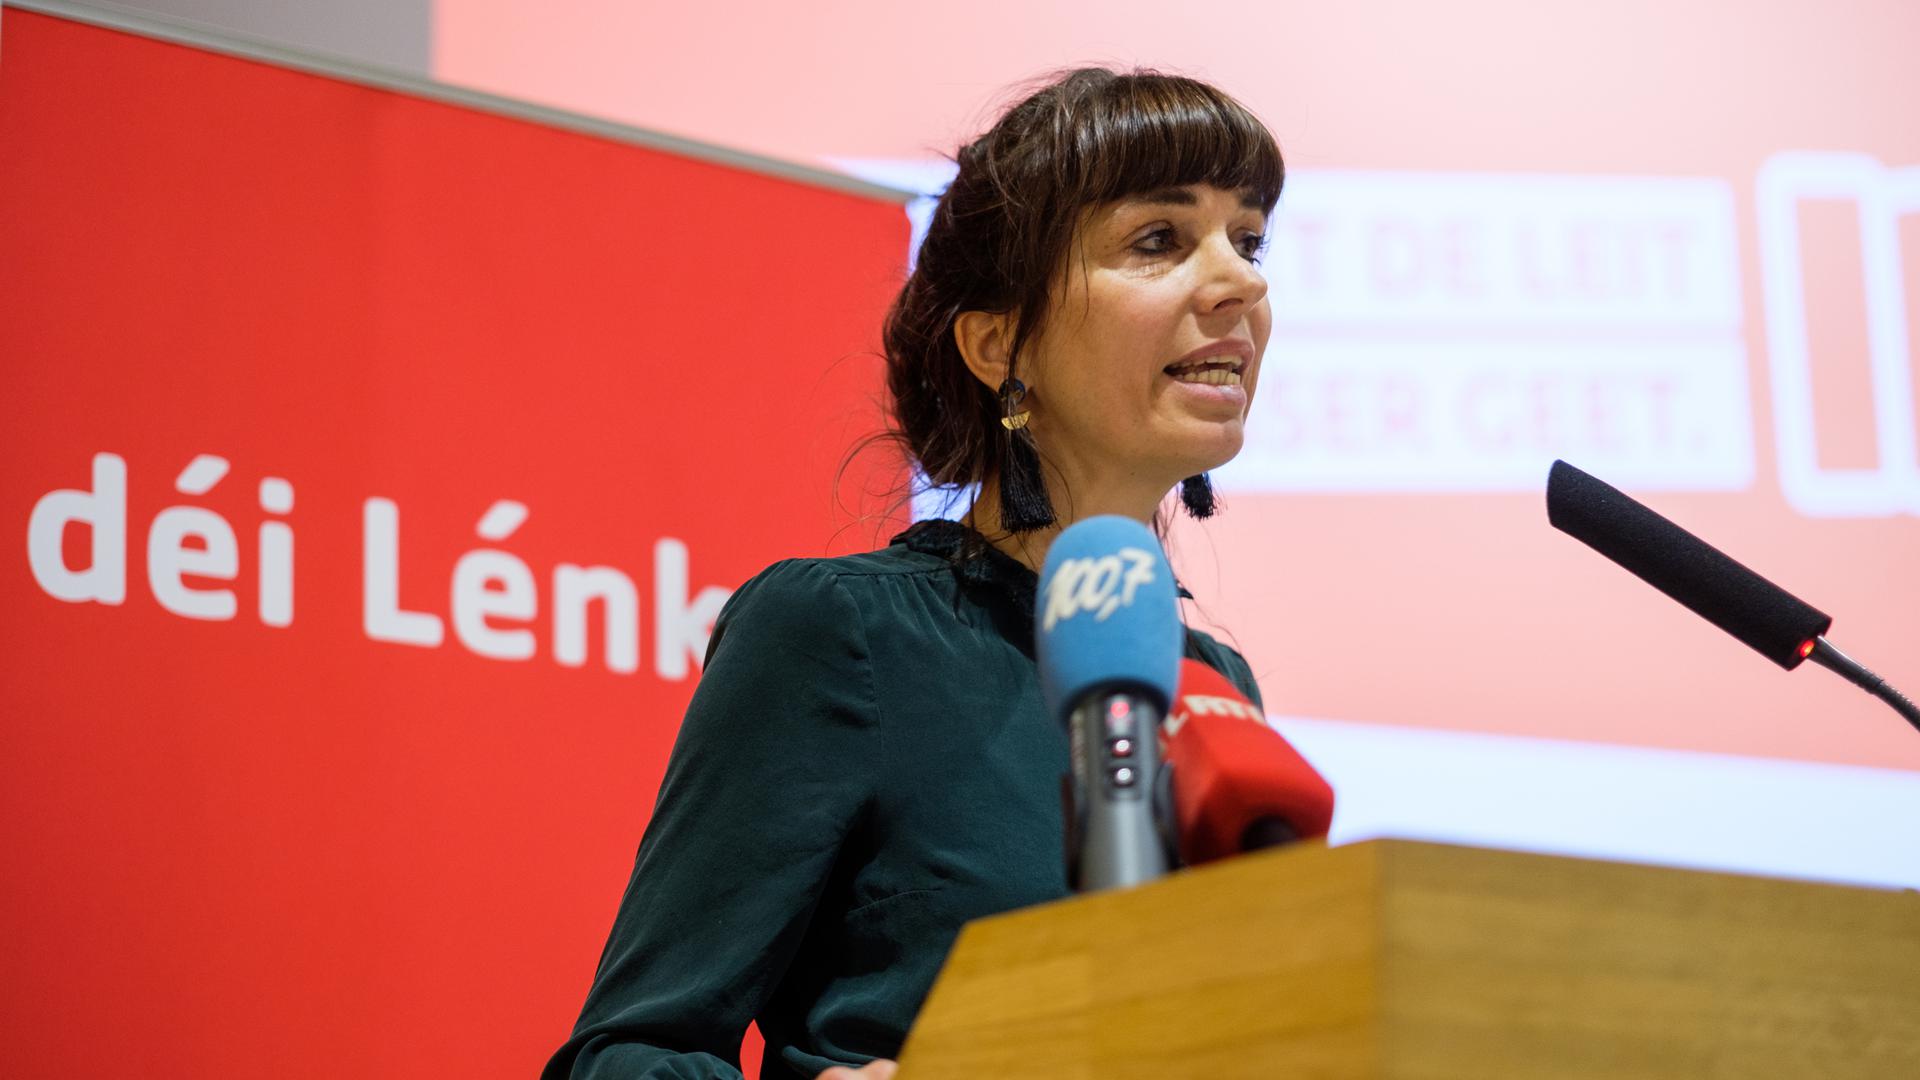 Déi Lénk donne une voix aux minorités, souligne la députée Nathalie Oberweis.